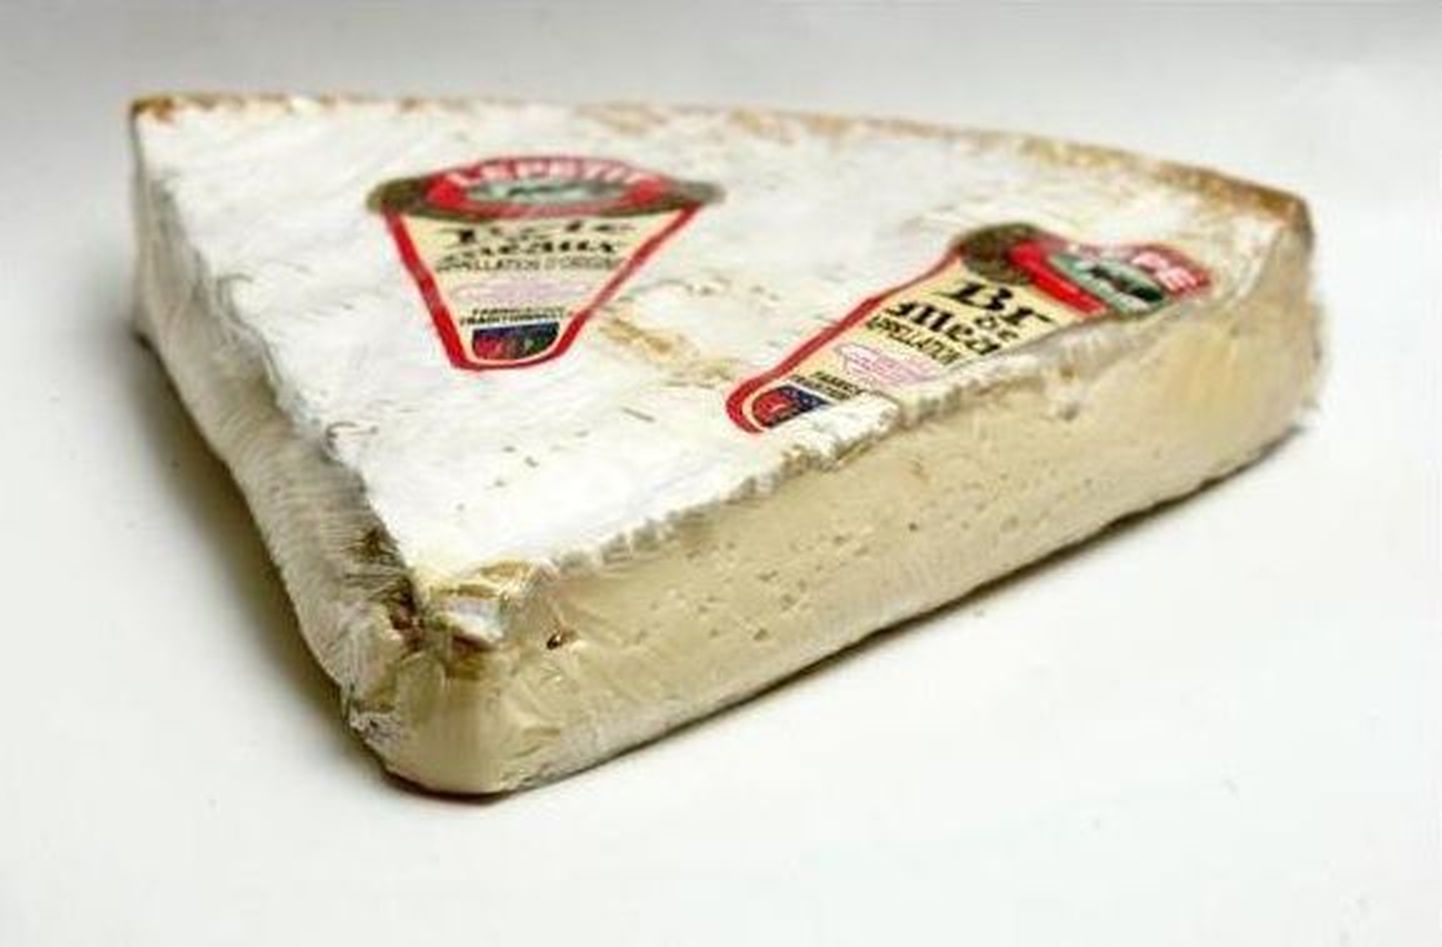 Brie juust.